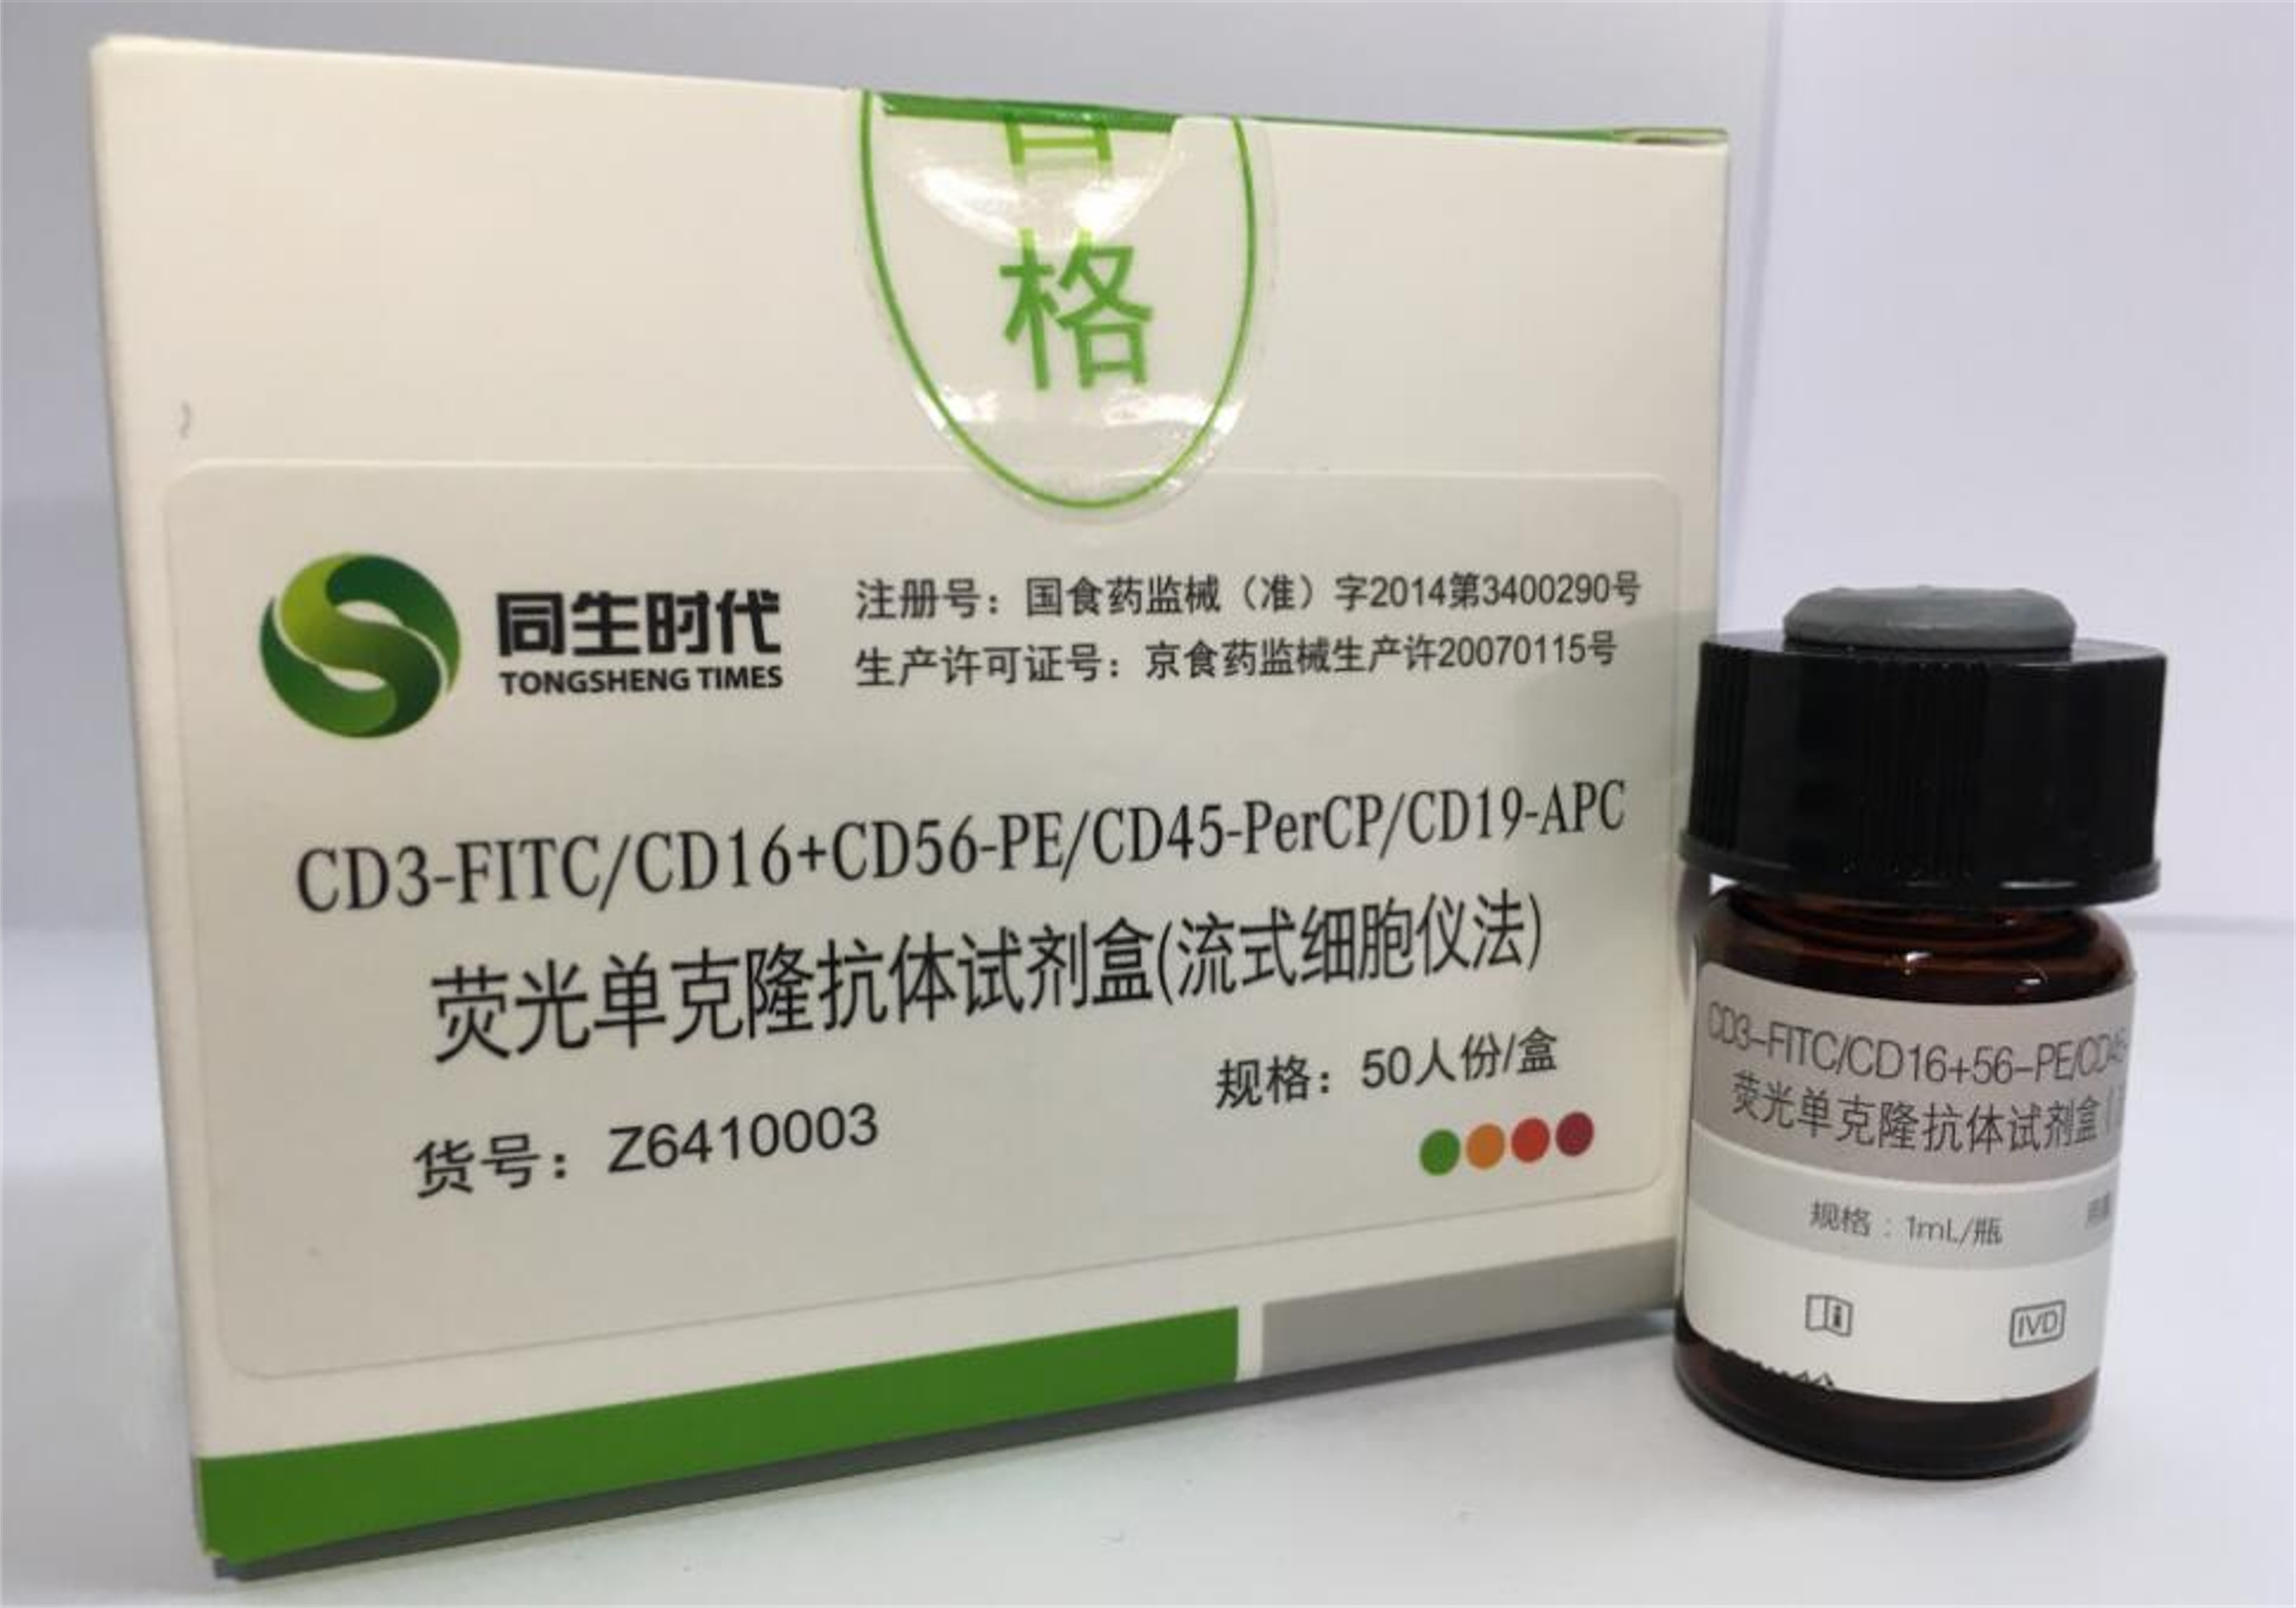 【同生】CD3-FITC/CD16+CD56-PE/CD45-PerCP/CD19-APC荧光单克隆抗体试剂盒（流式细胞仪法）-云医购